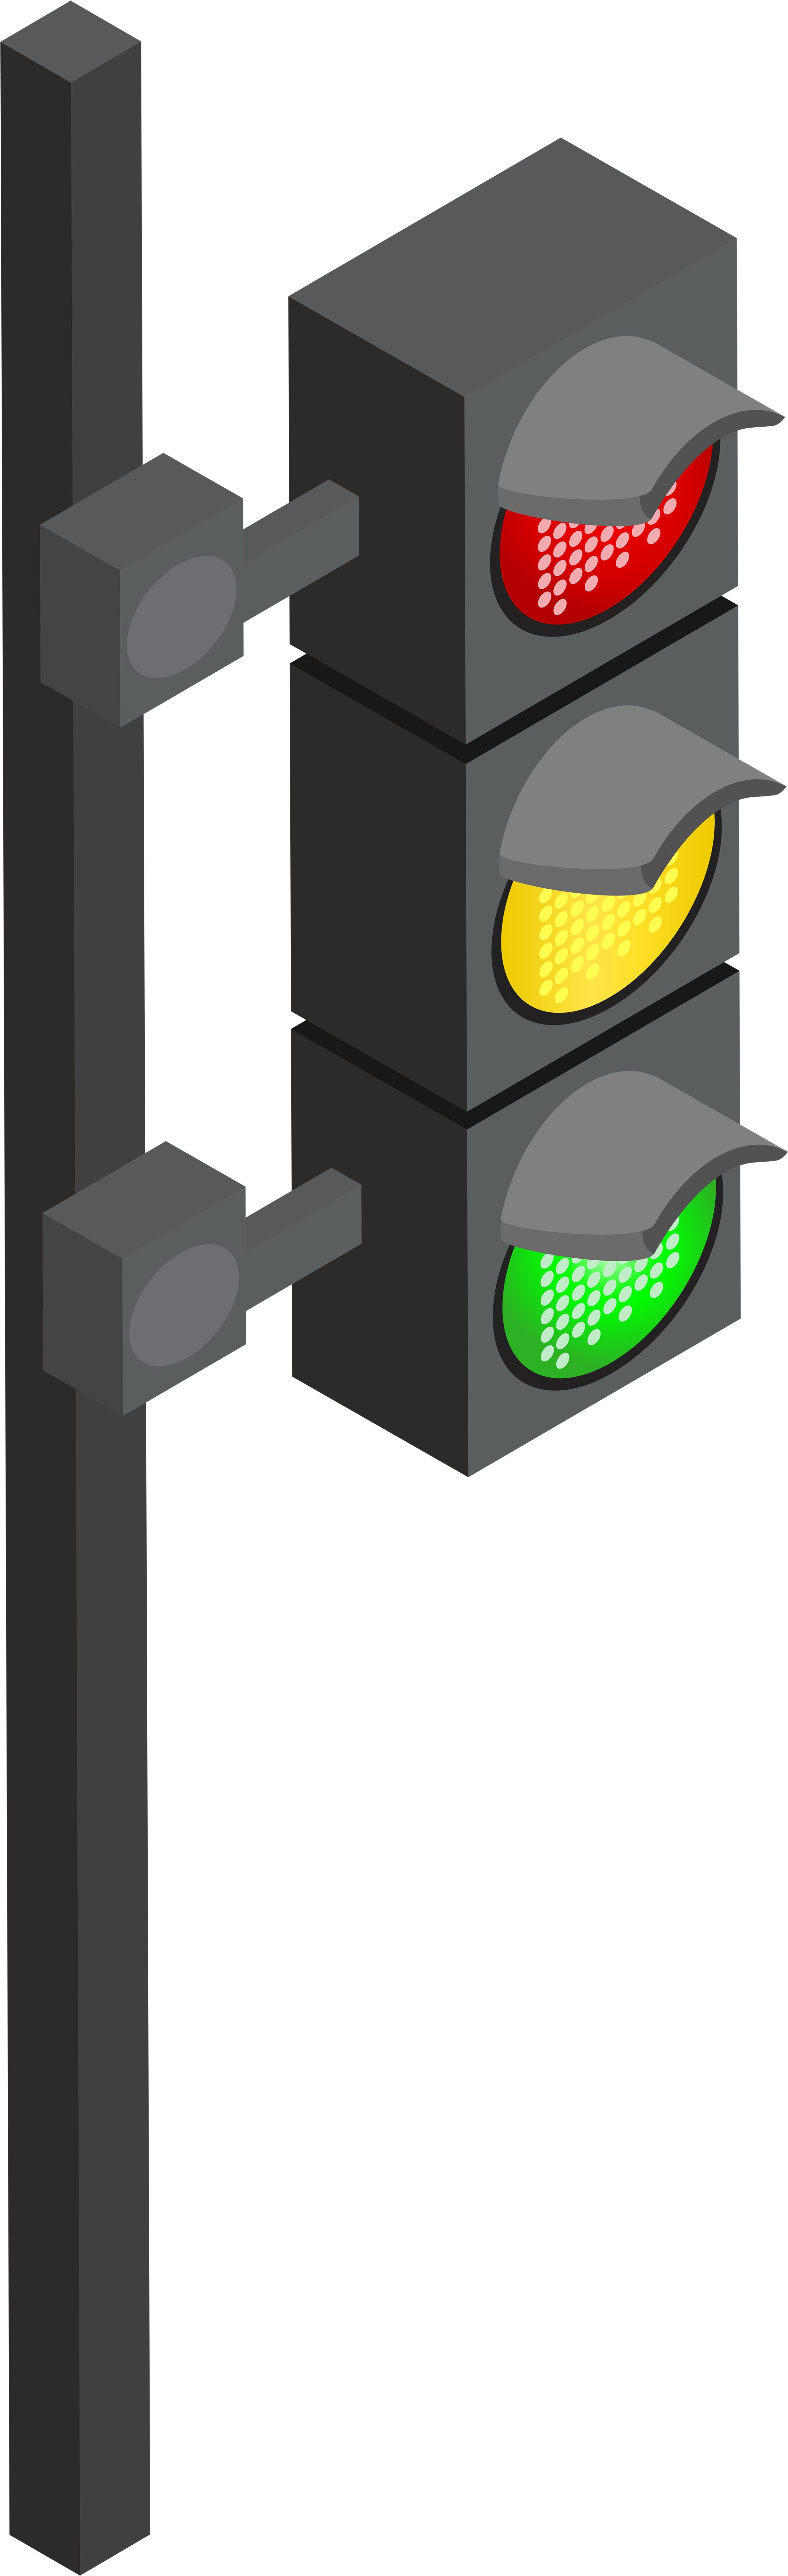 Traffic Light Png Clip Art - Clip Art (2578x8000), Png Download